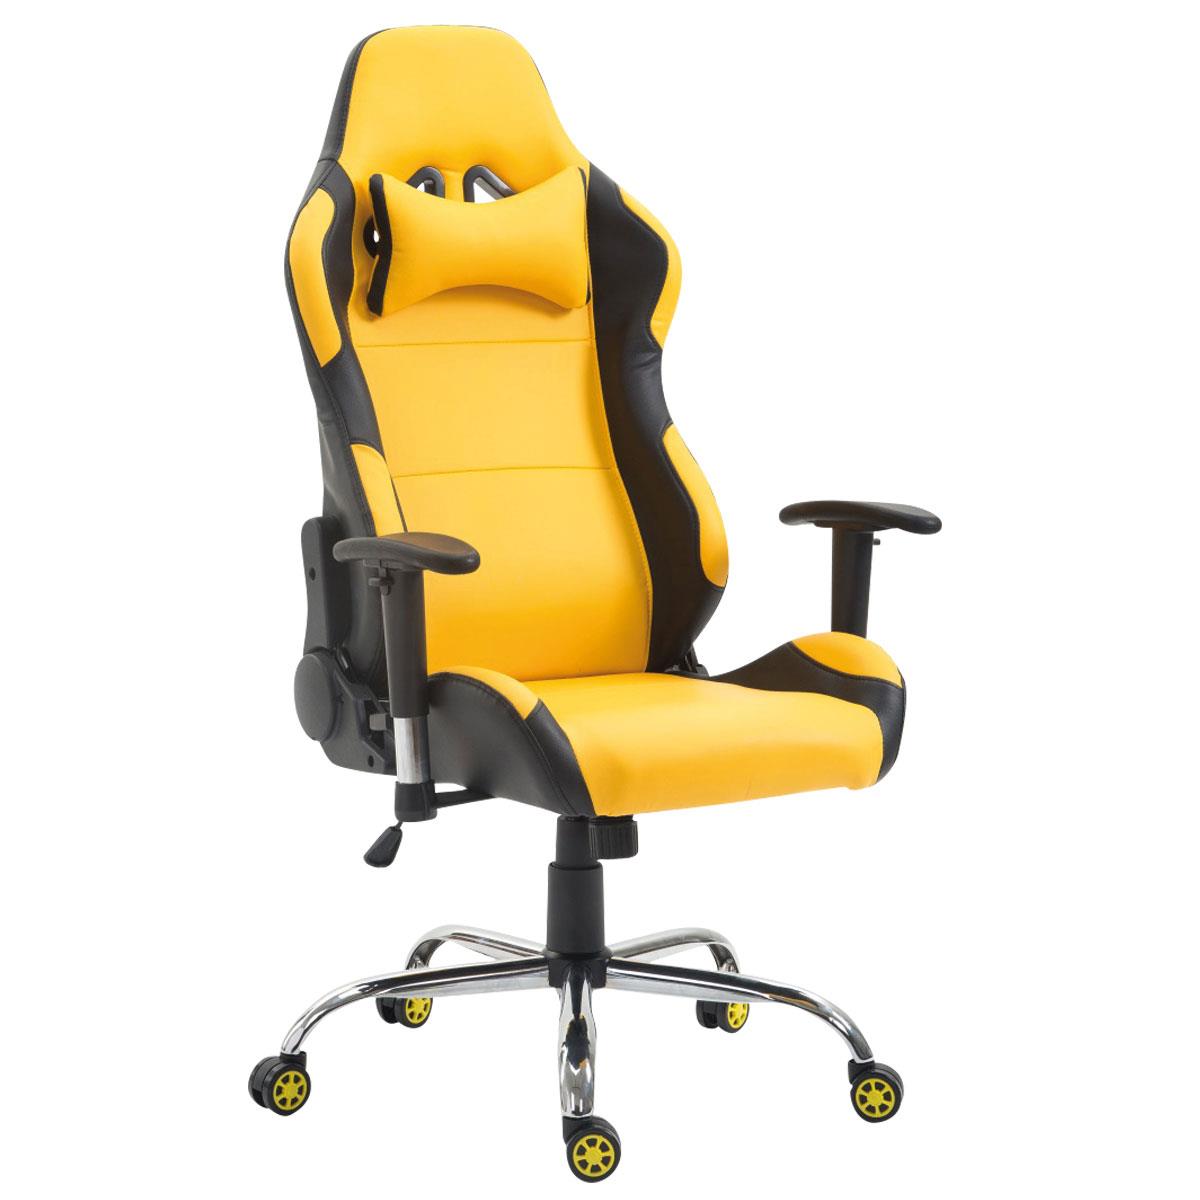 Gaming-Stuhl ROSBY. Sportliches Design und hoher Komfort, Lederbezug, Farbe Gelb